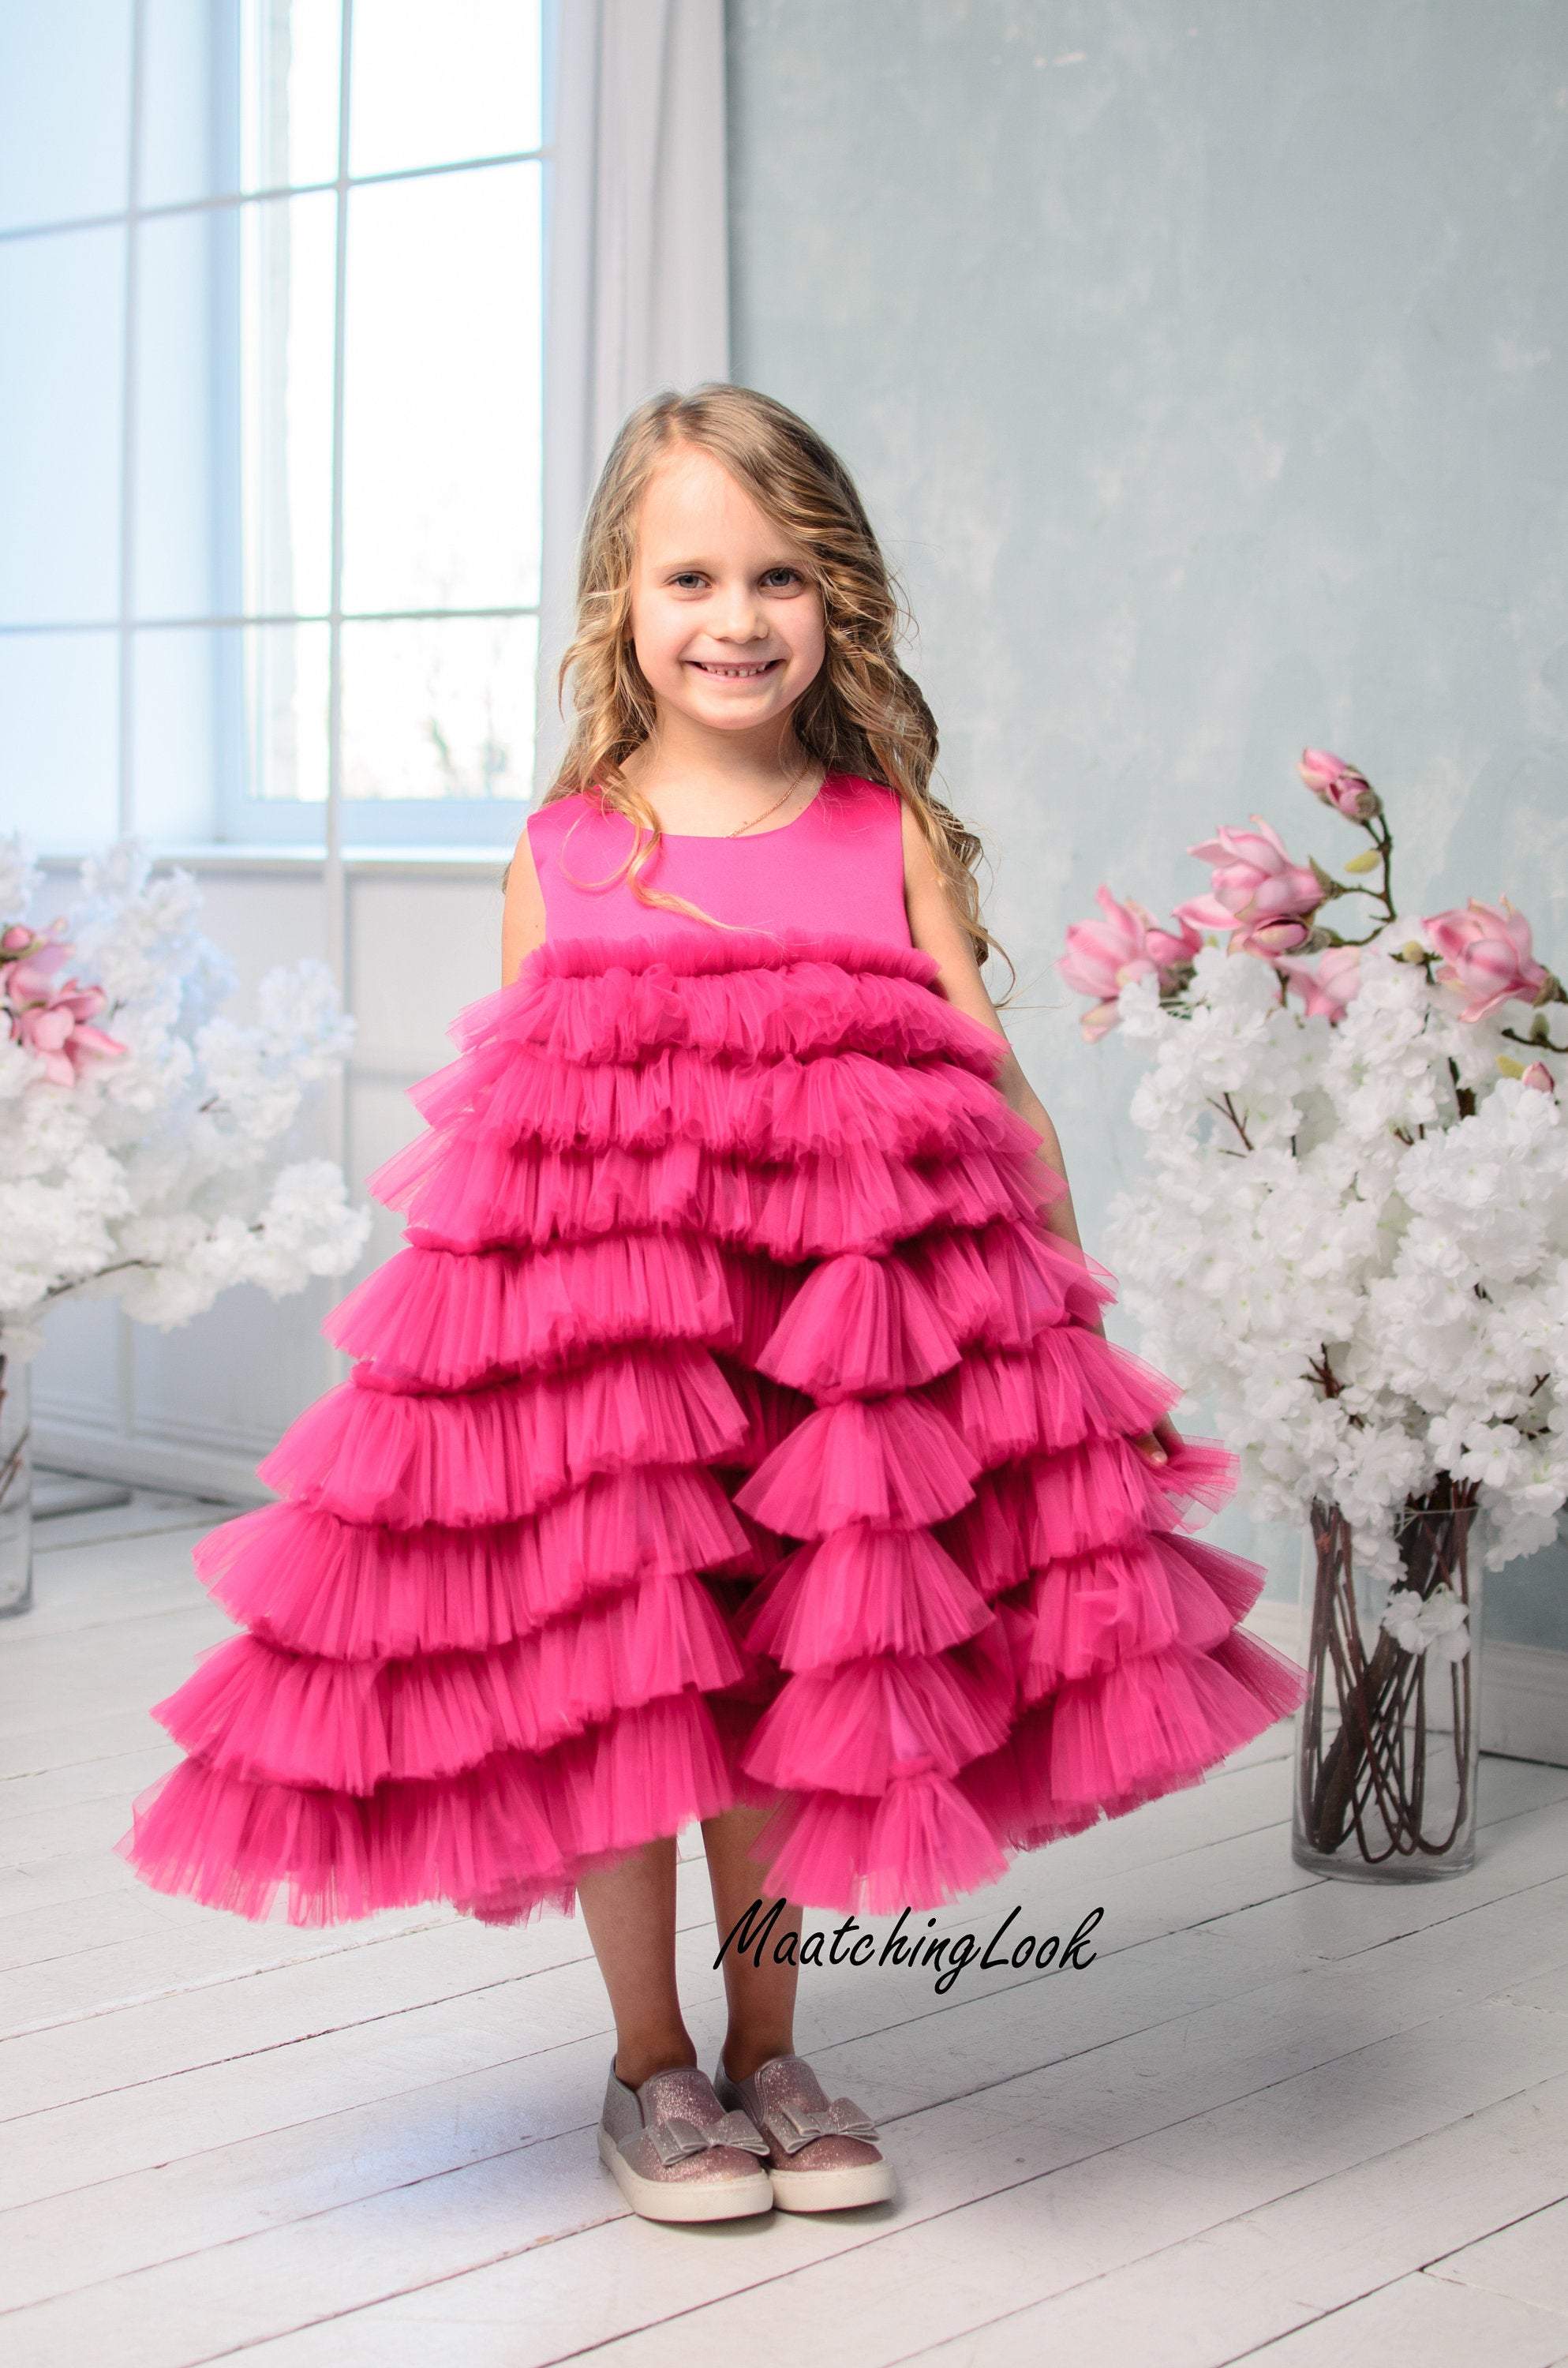 https://www.matchinglook.com/cdn/shop/products/hot-pink-dress-baby-dress-pageant-dress-tulle-dress-flower-girl-dress-birthday-dress-toddler-dress-hot-pink-wedding-dress-girl-tutu-dress-matchinglook-132520@2x.jpg?v=1594511090